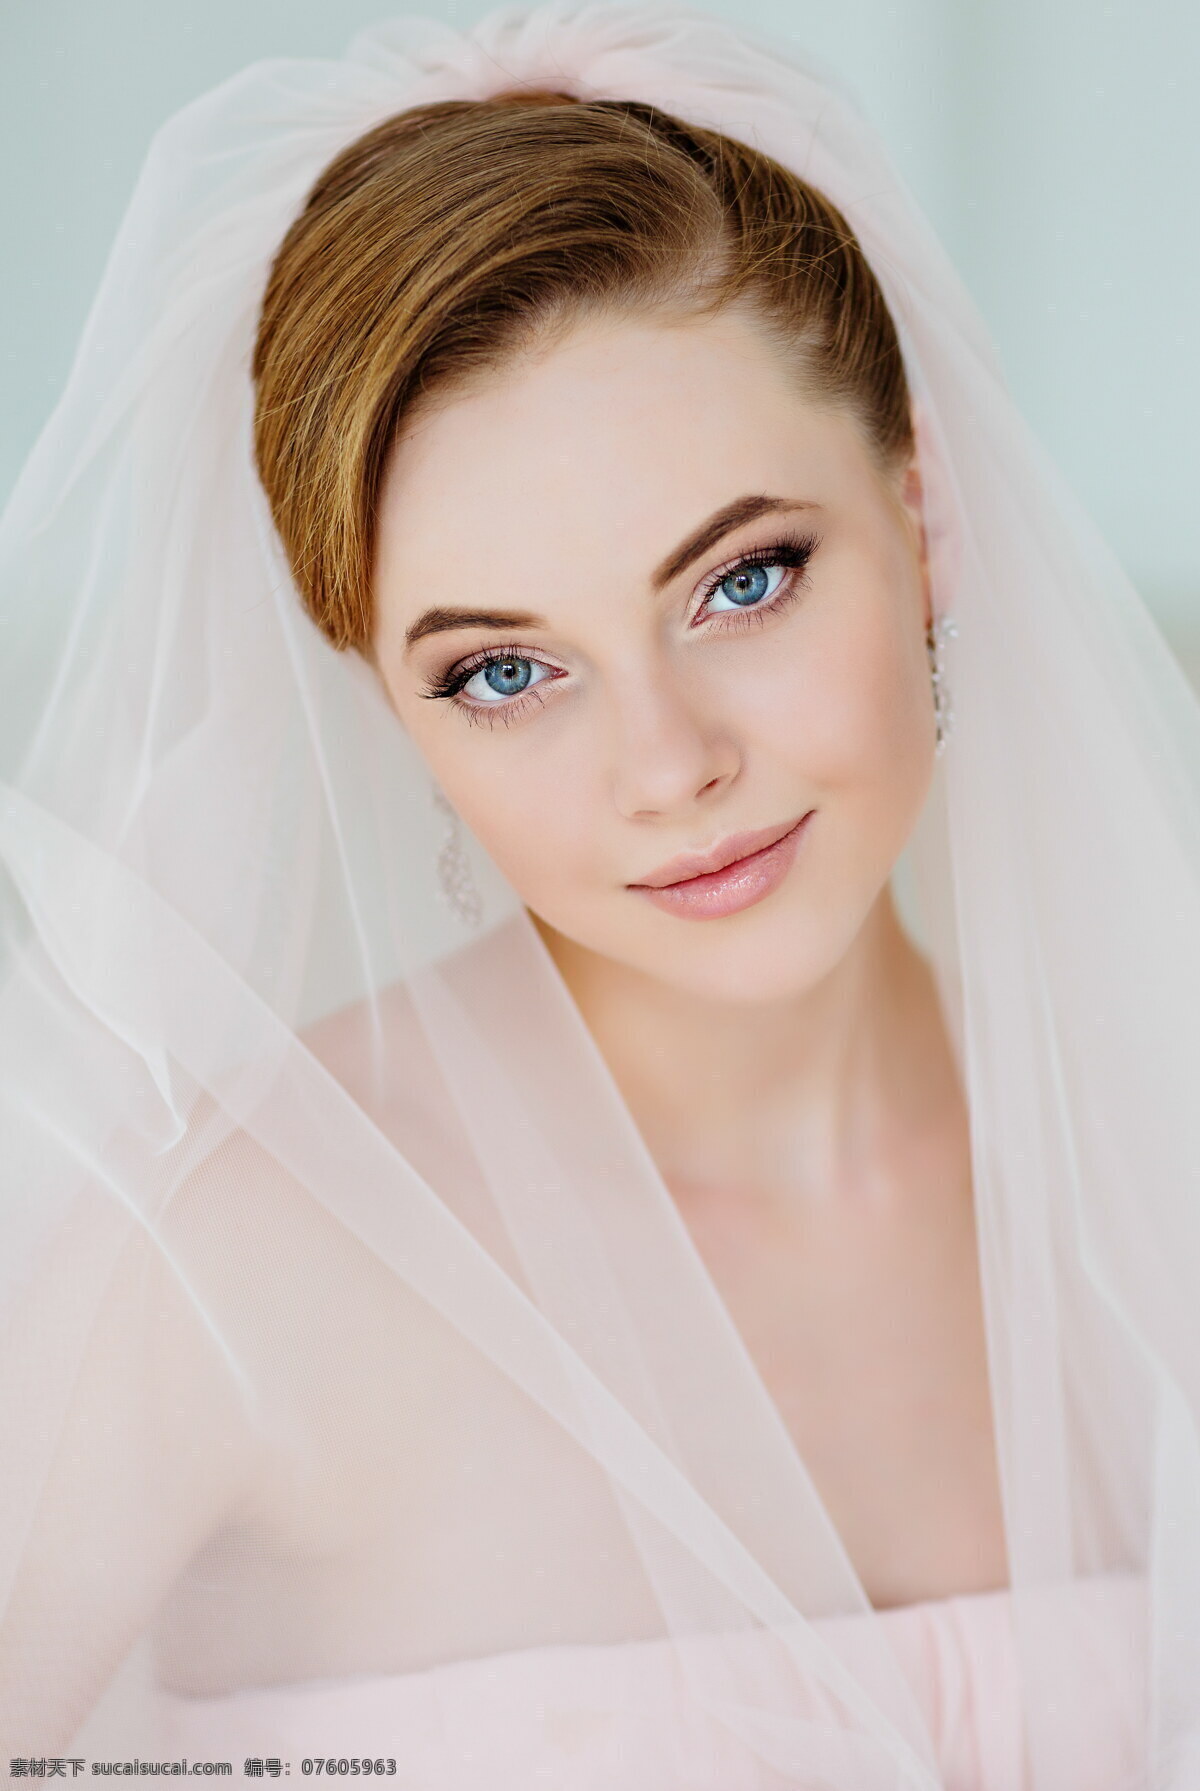 头纱与婚纱的搭配是让你成为最美新娘的重要因素